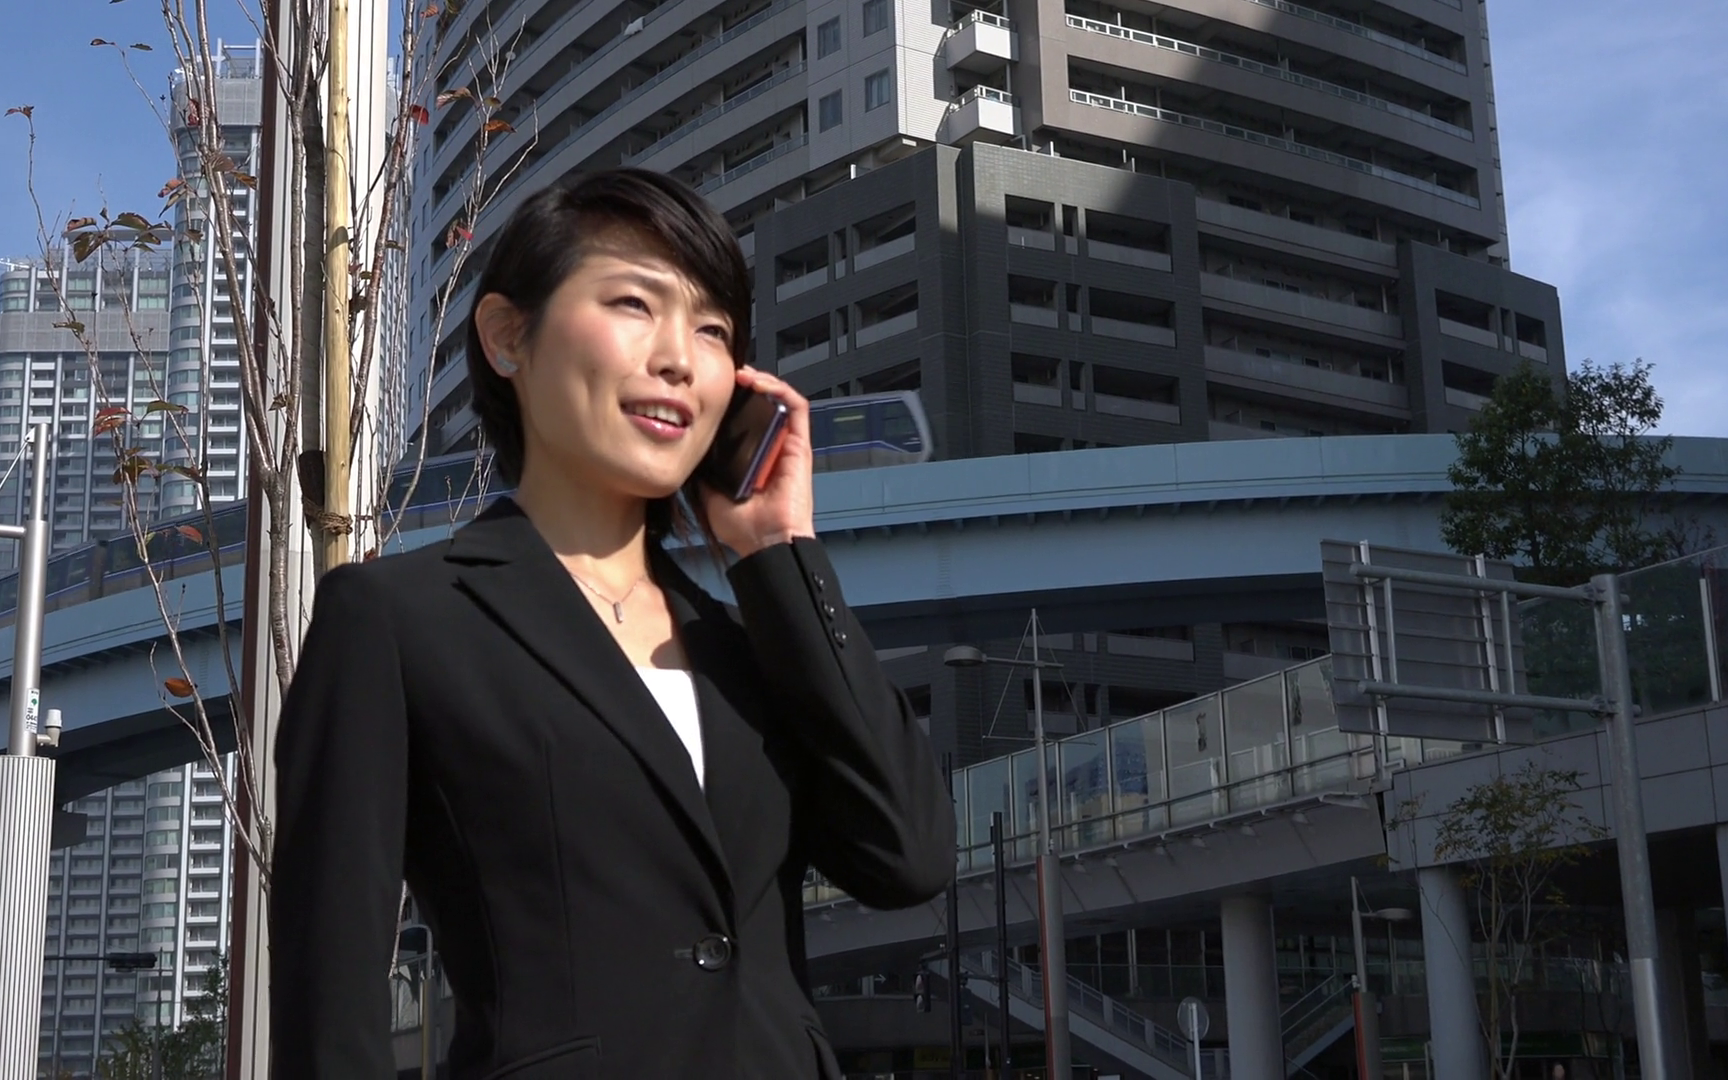 Phụ nữ làm văn phòng ở Nhật luôn áp dụng 5 mẹo tiết kiệm chi phí đơn giản, hiệu quả này mà vẫn hạnh phúc